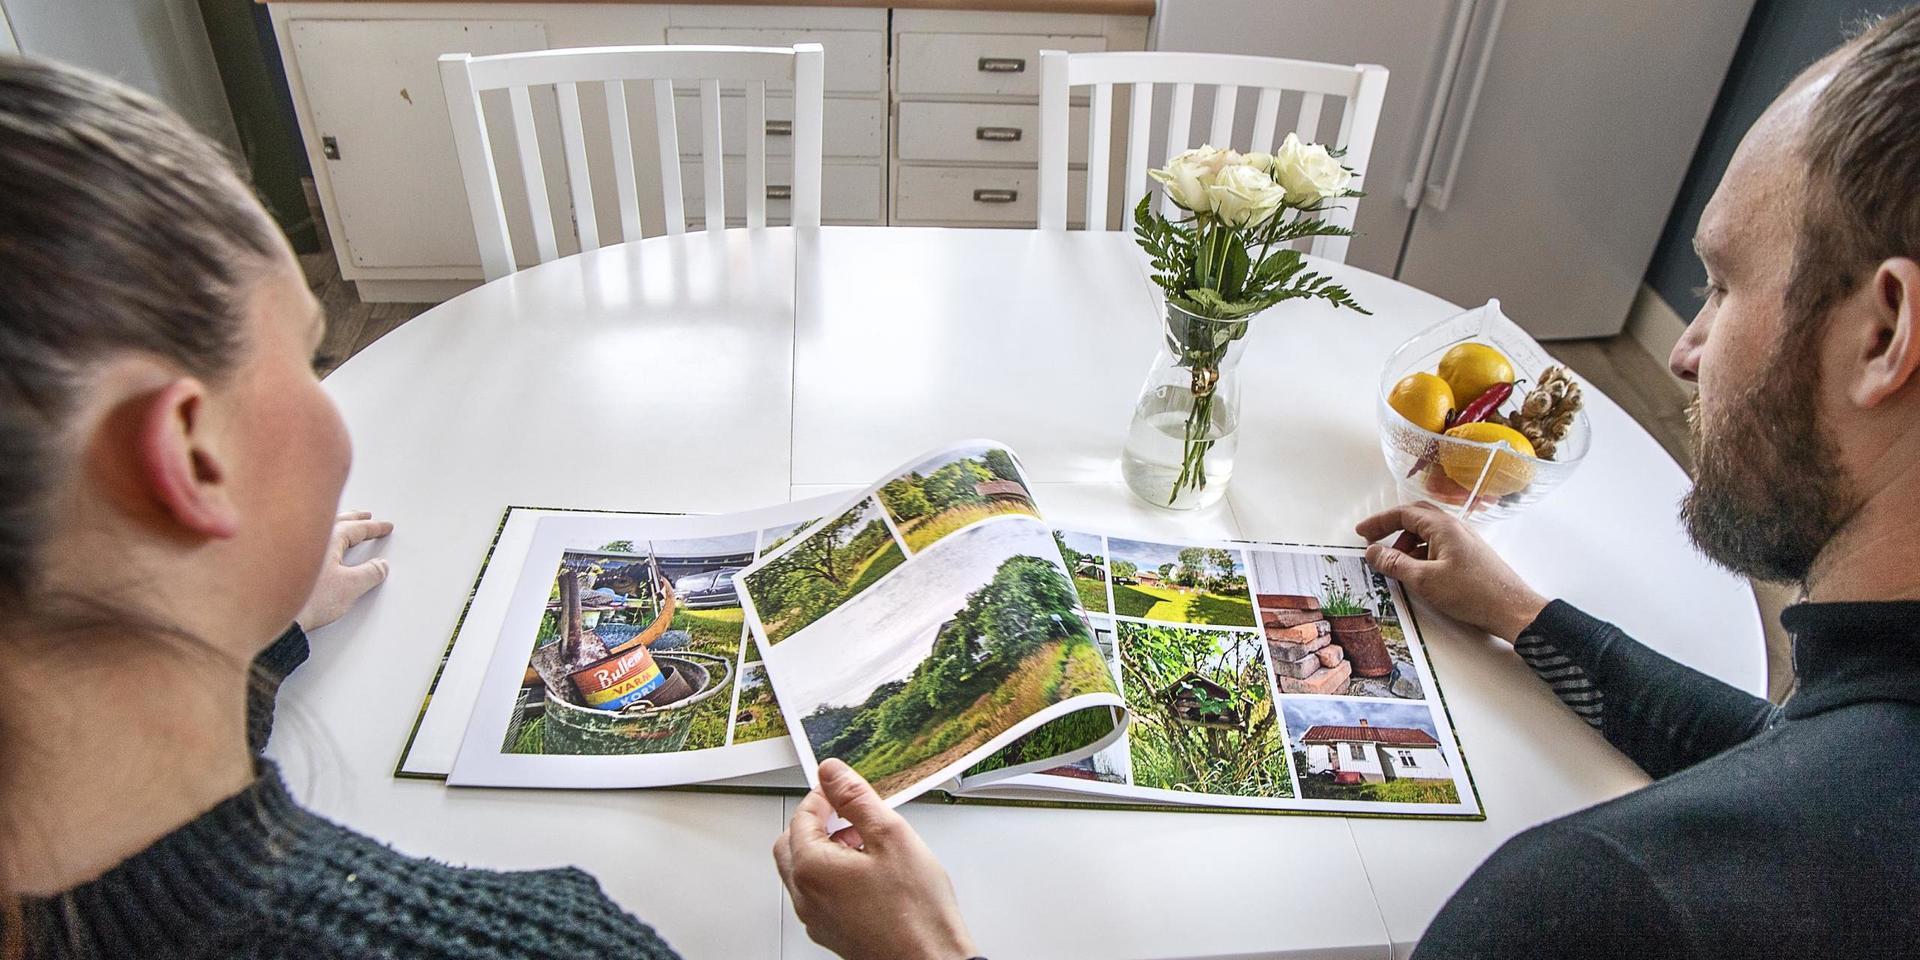 Paret har tryckt upp en fotobok med bilder från det första året i Gullered. Visionen är att göra en varje år, för att få en tydlig tidslinje över vad som händer varje år.